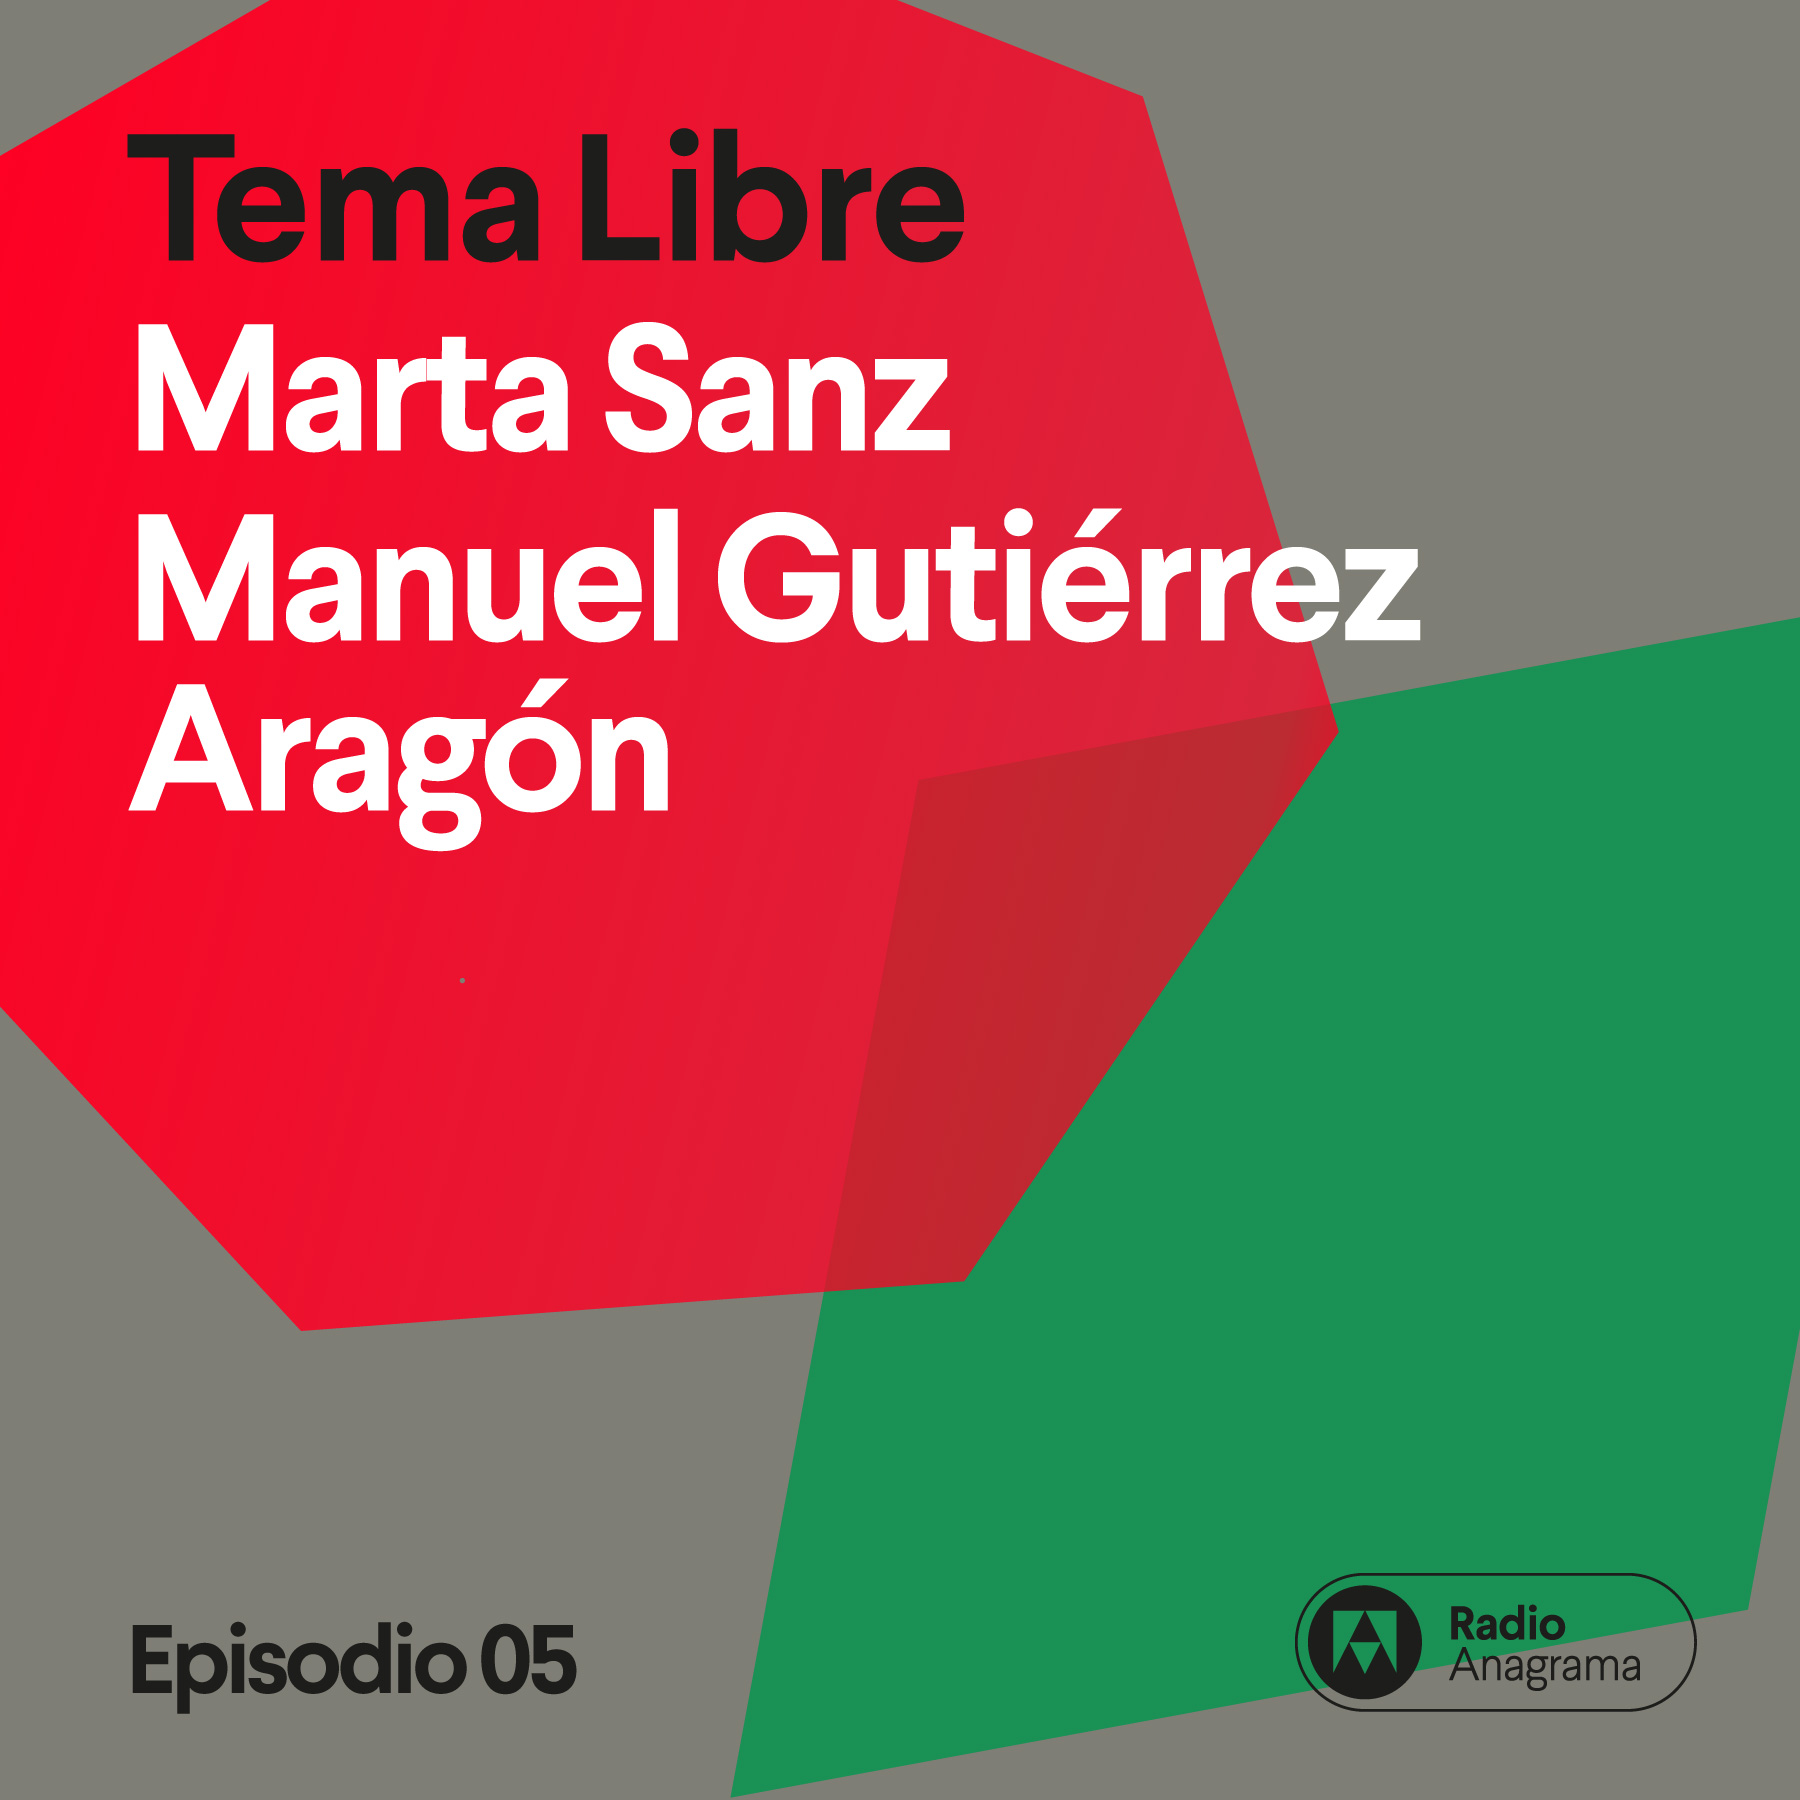 Cuando el cine marca con Manuel Gutiérrez Aragón y Marta Sanz